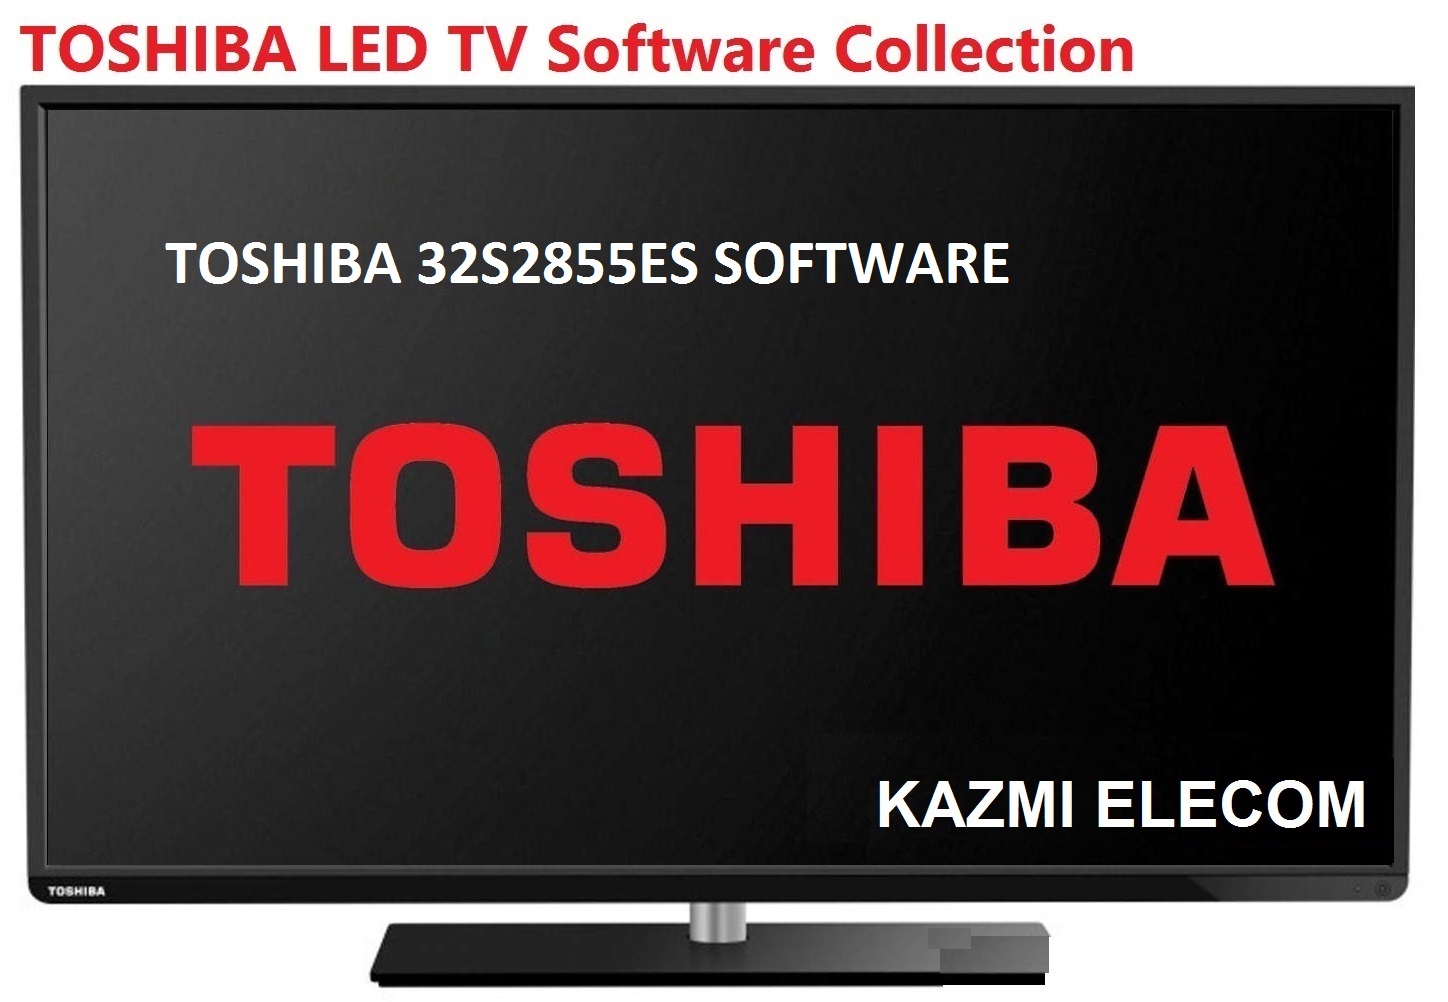 Toshiba 32S2855Es